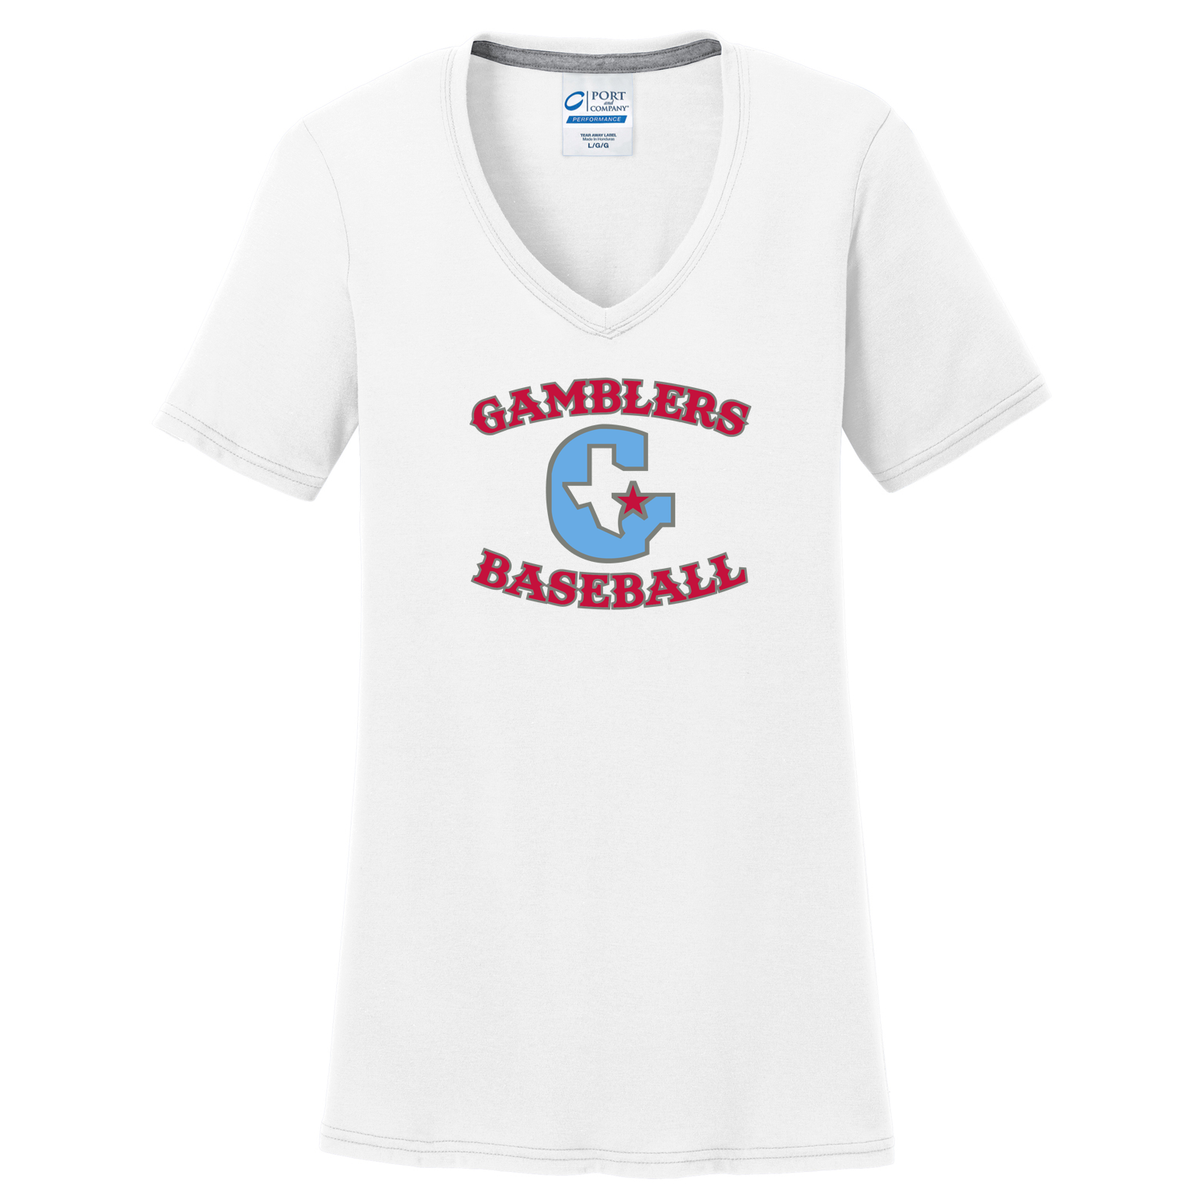 Gamblers Baseball  Women's T-Shirt